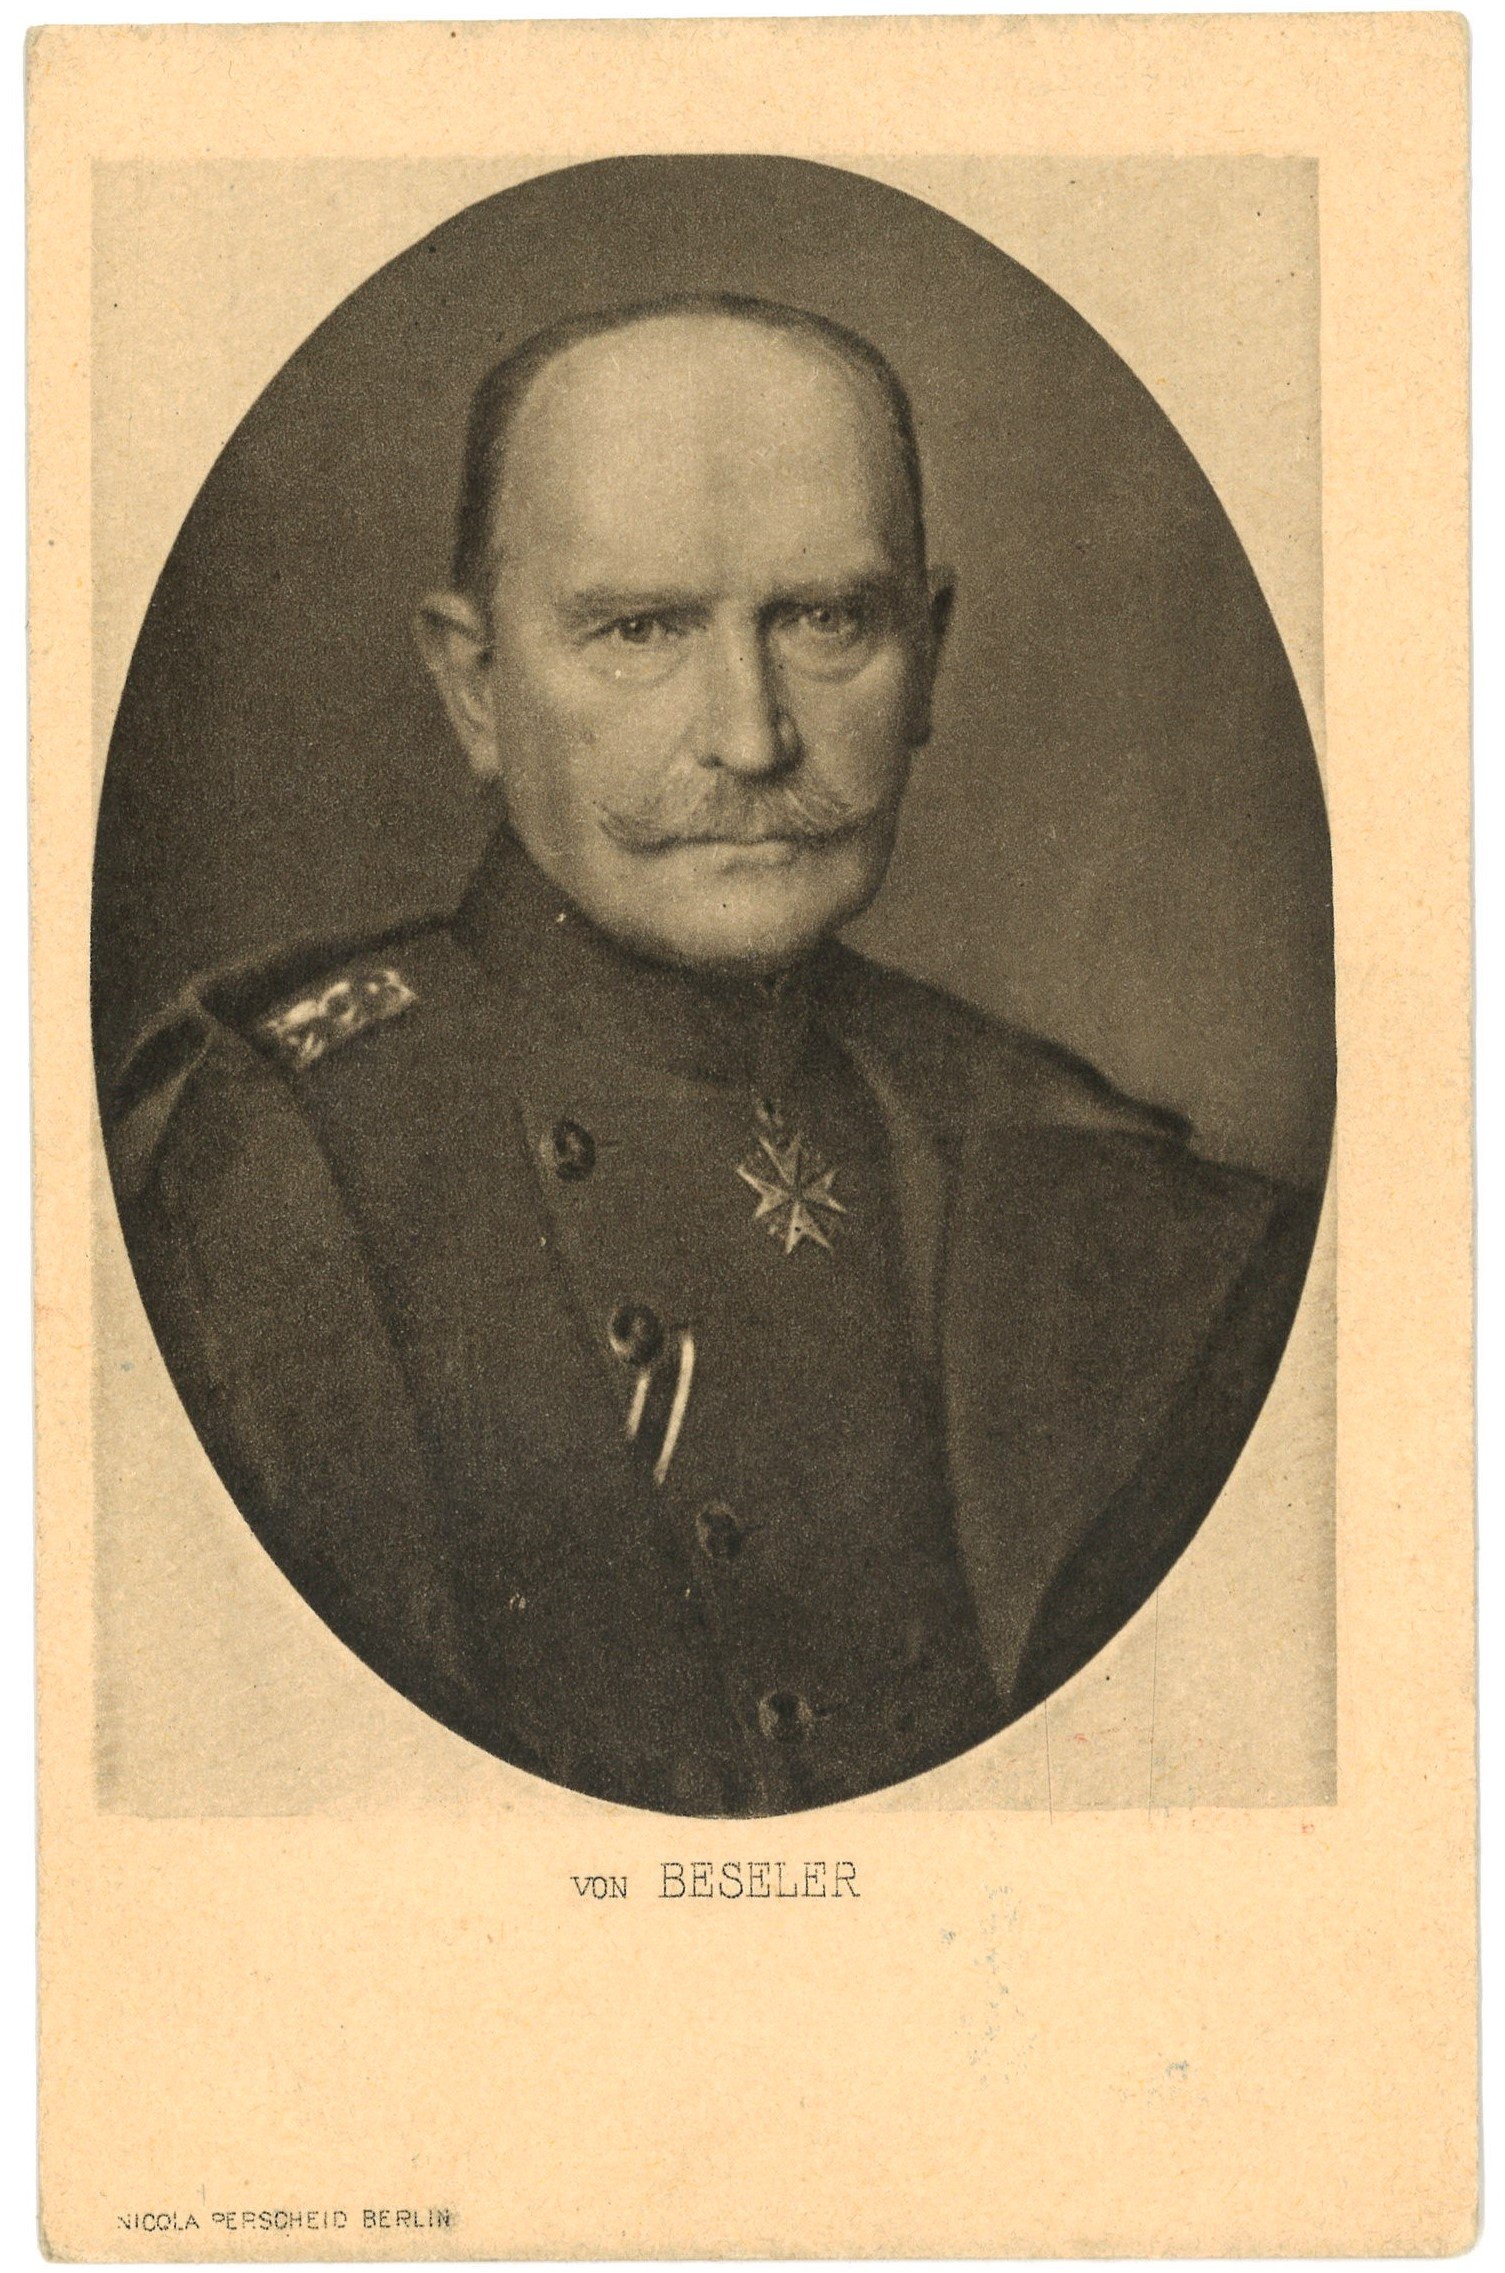 Beseler, Hans von (1850–1921), preuß. Generaloberst und Politiker (Landesgeschichtliche Vereinigung für die Mark Brandenburg e.V. CC BY)